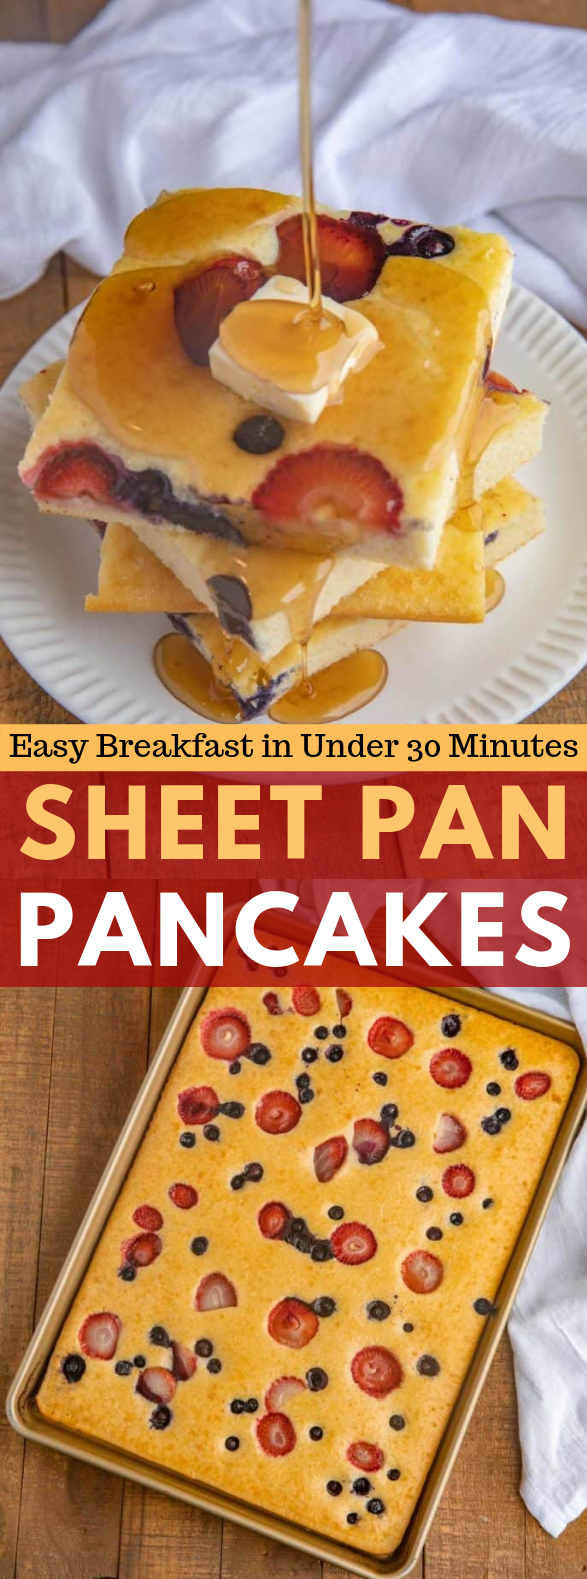 SHEET PAN PANCAKES #dessert #breakfast